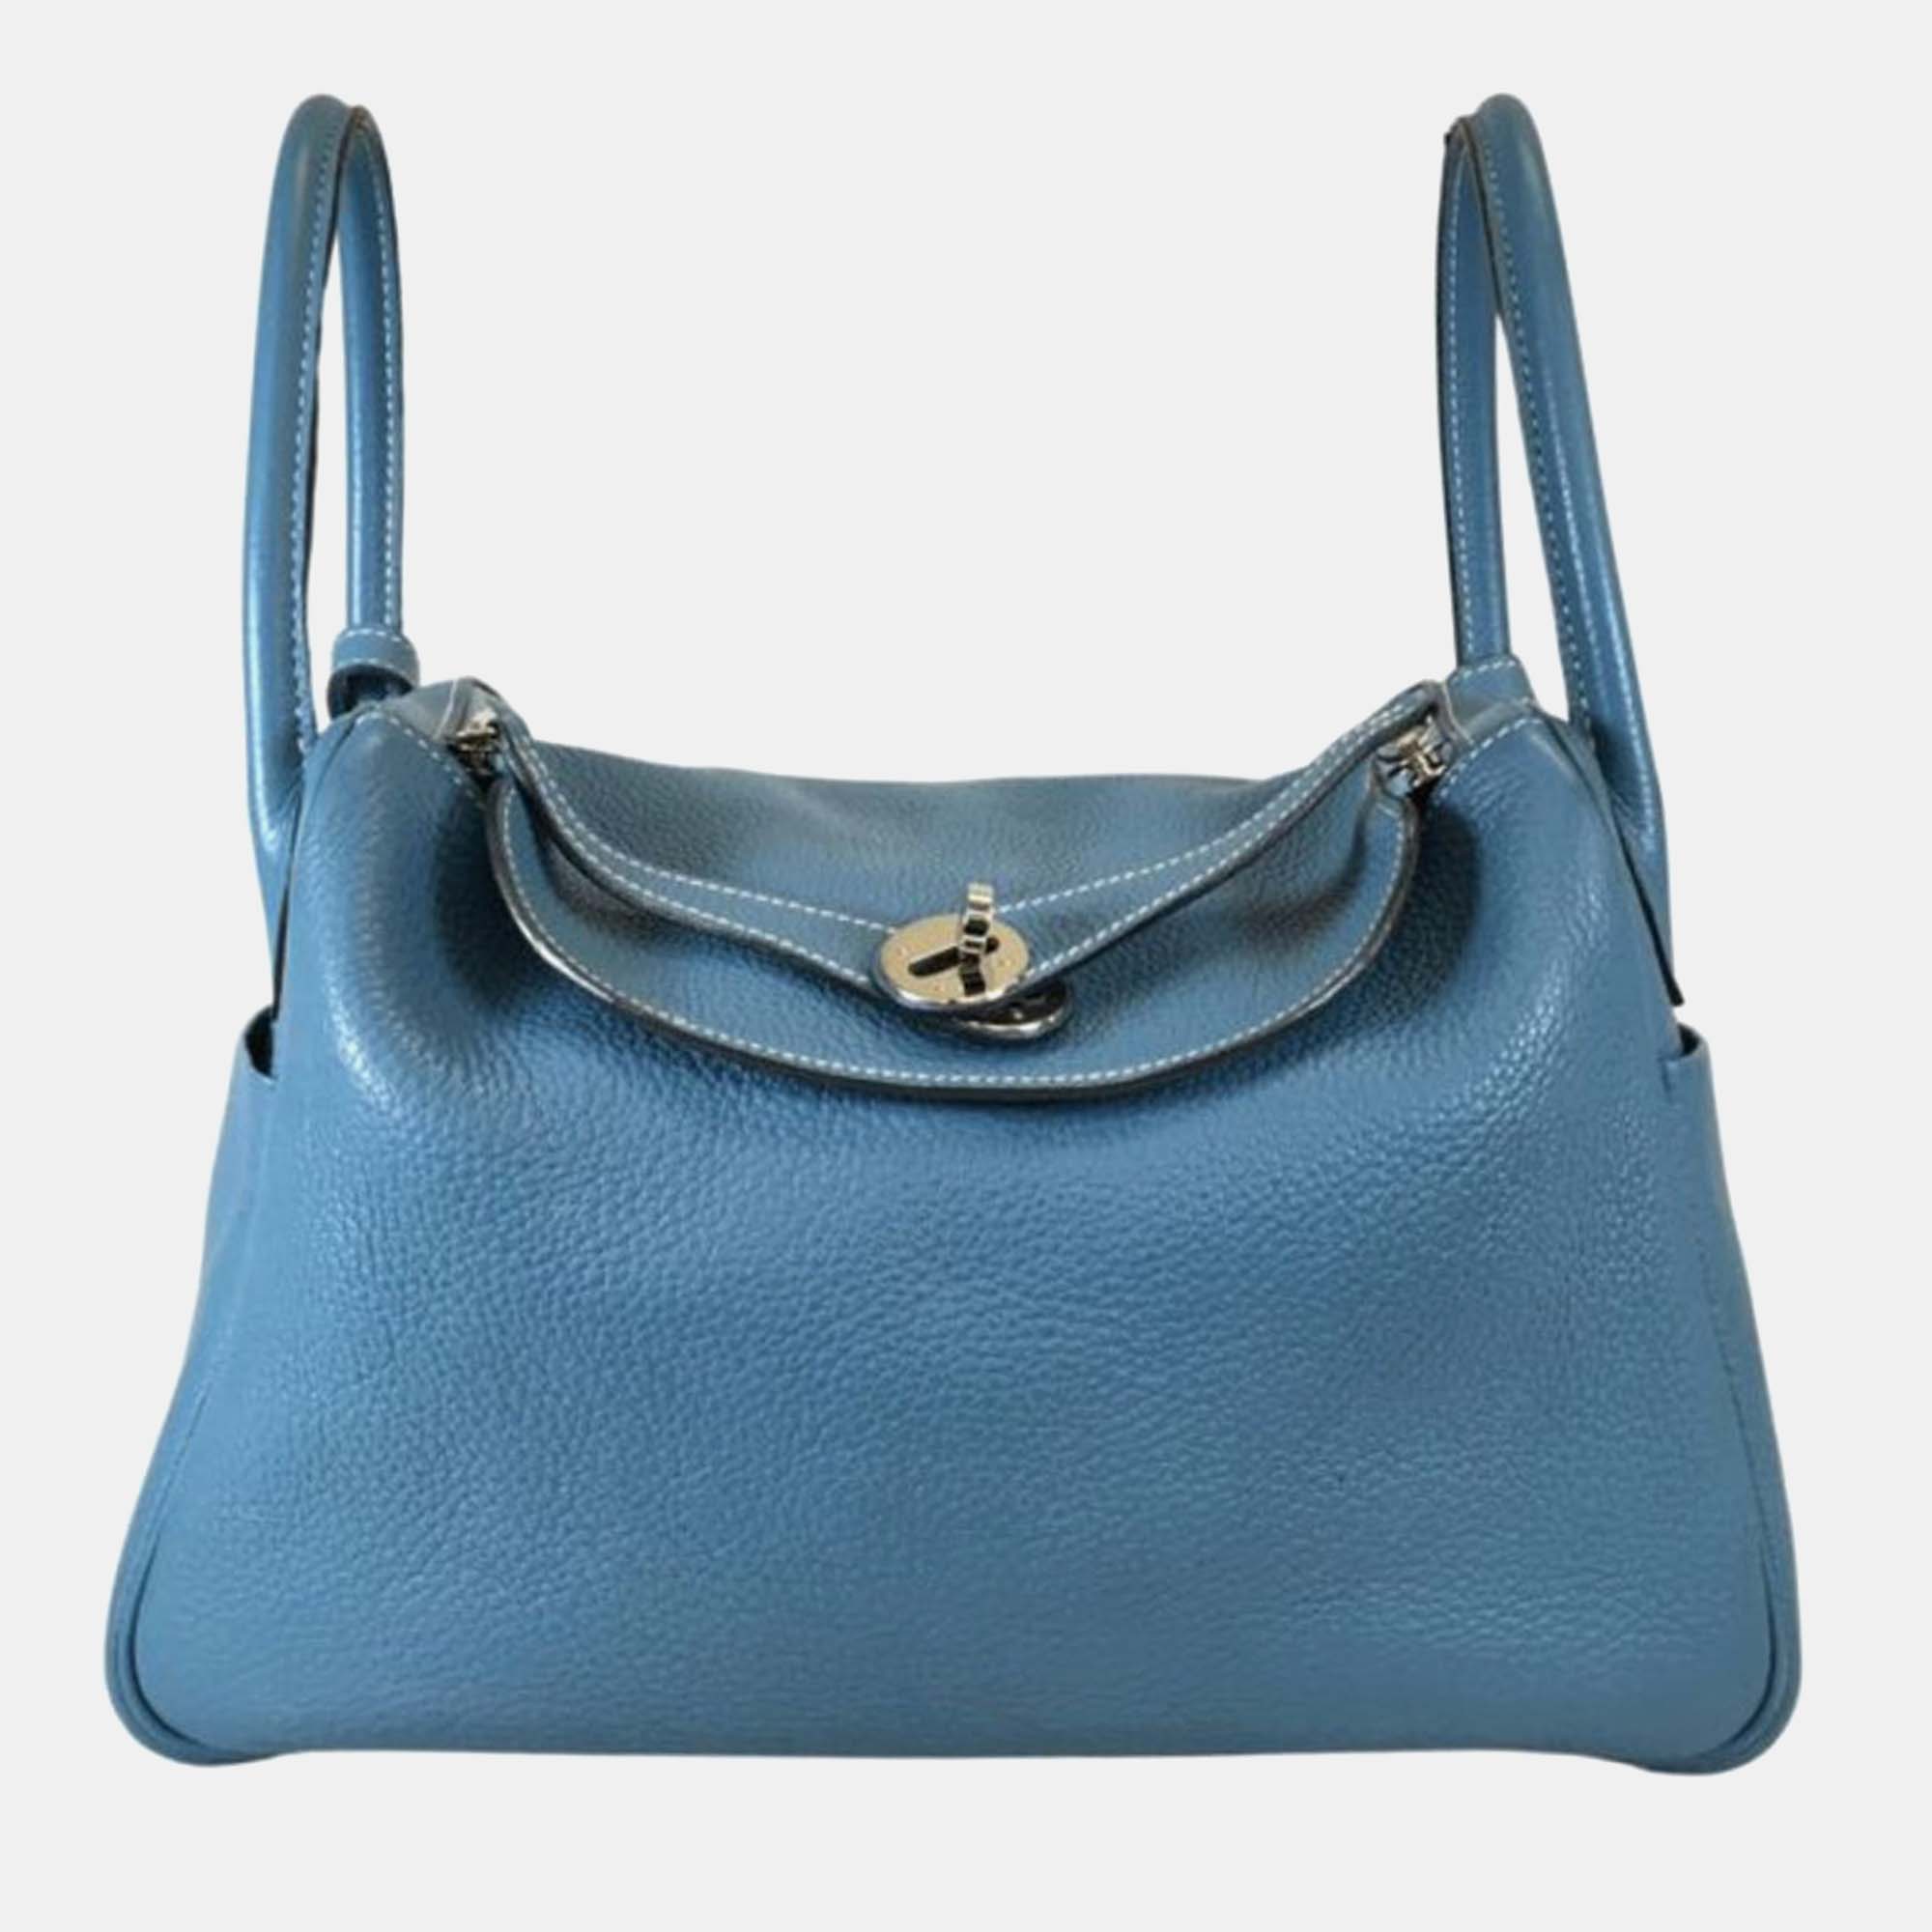 Hermes blue jean clemence leather lindy 30 shoulder bag